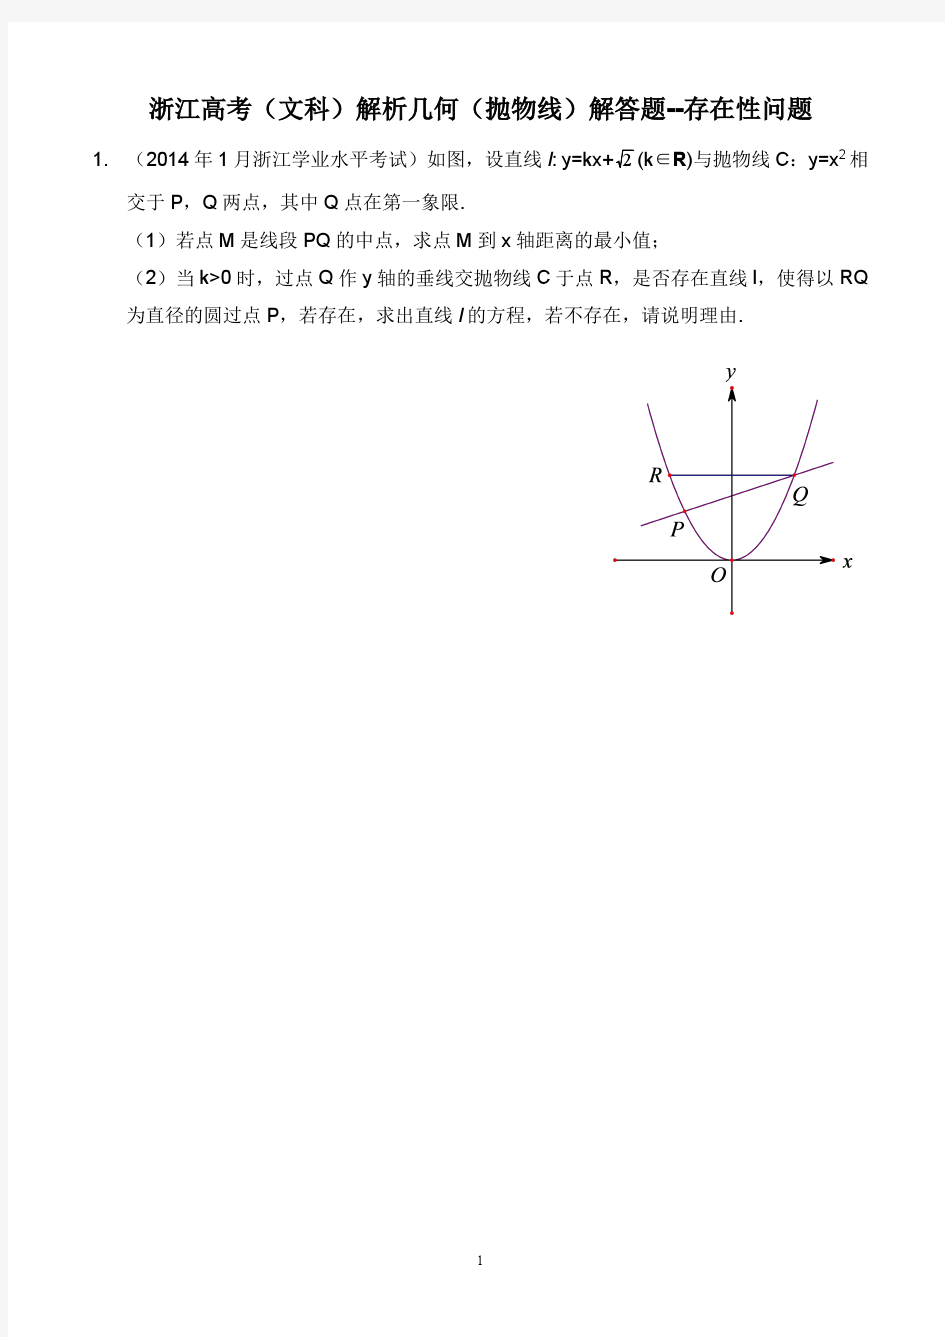 YALE 浙江高考(文科)解析几何(抛物线) 解答题--存在性问题2015-6-16